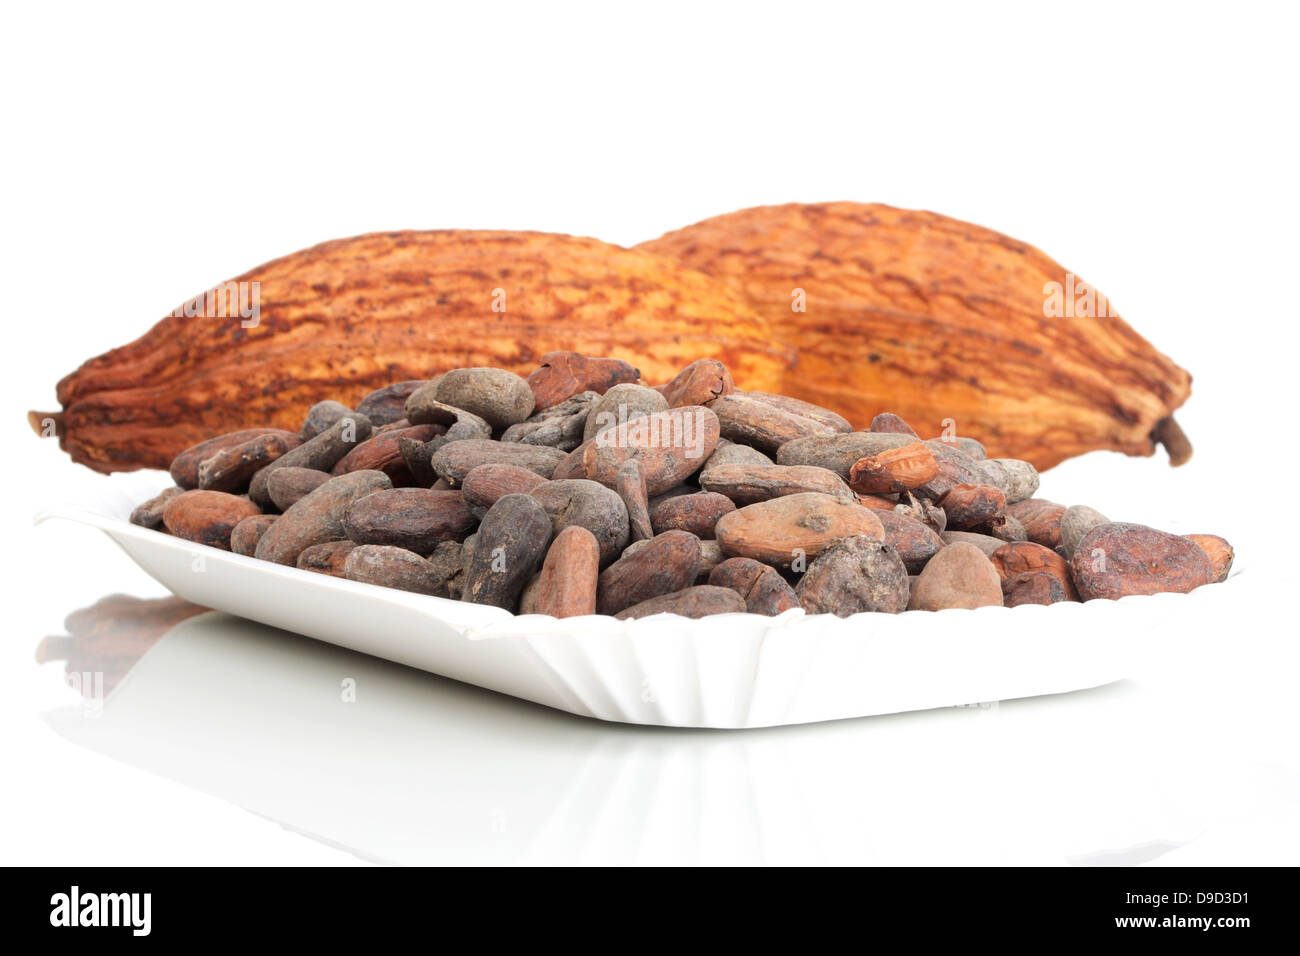 Les fèves de cacao avec fruits de cacao Banque D'Images